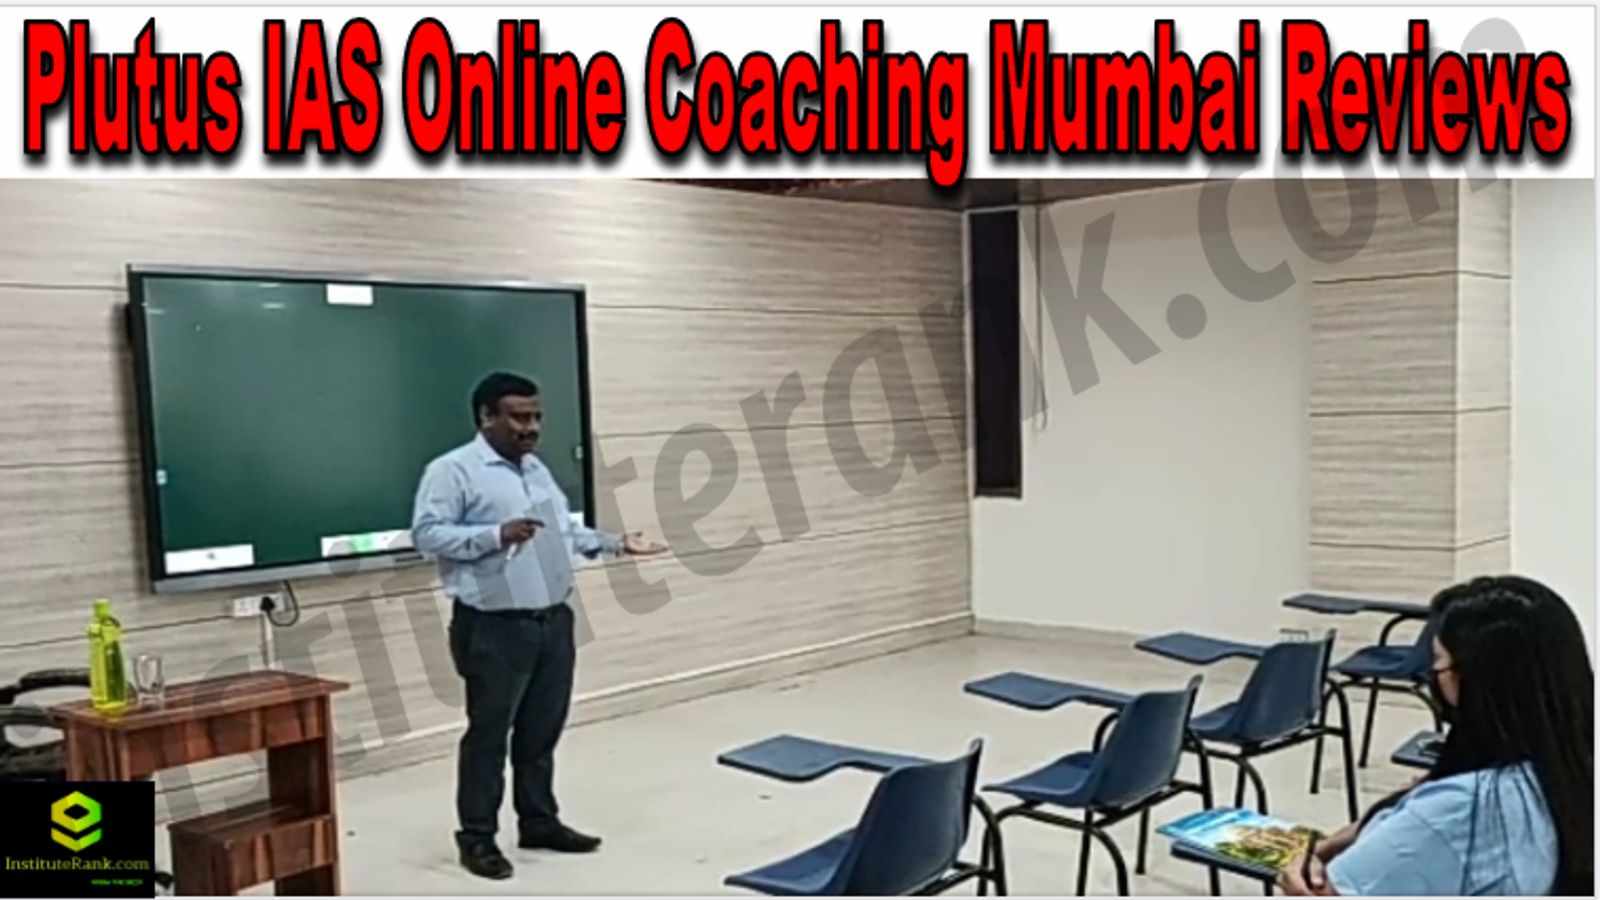 Plutus IAS Online Coaching Mumbai Reviews